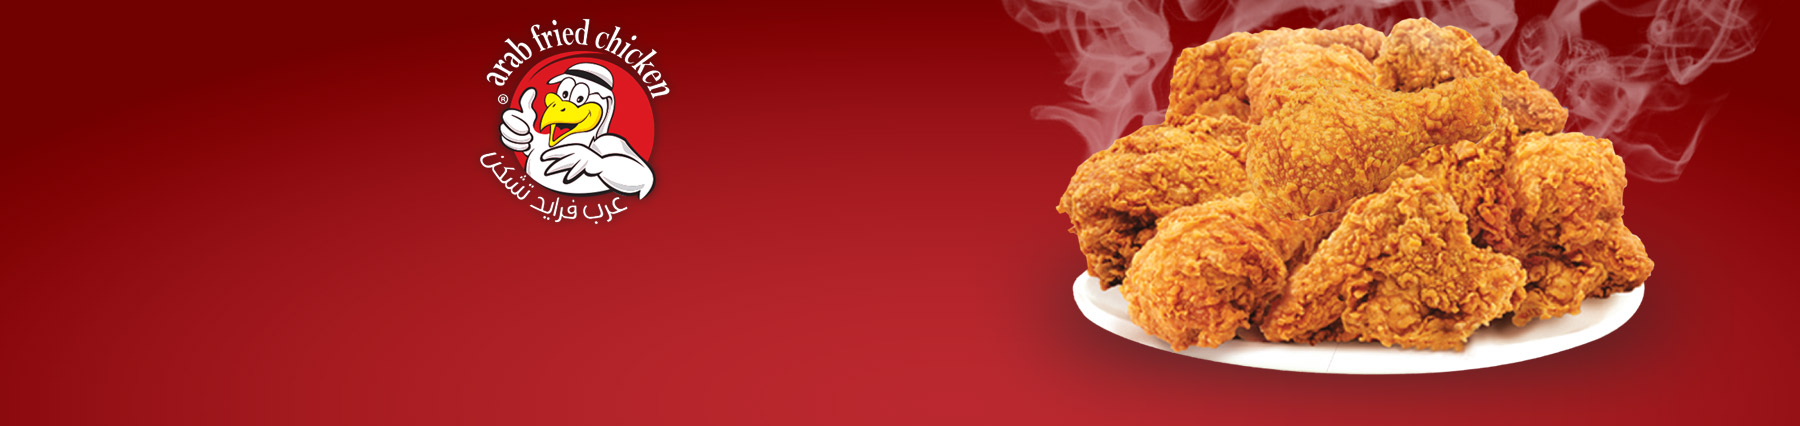 banner_arab_fried_chicken